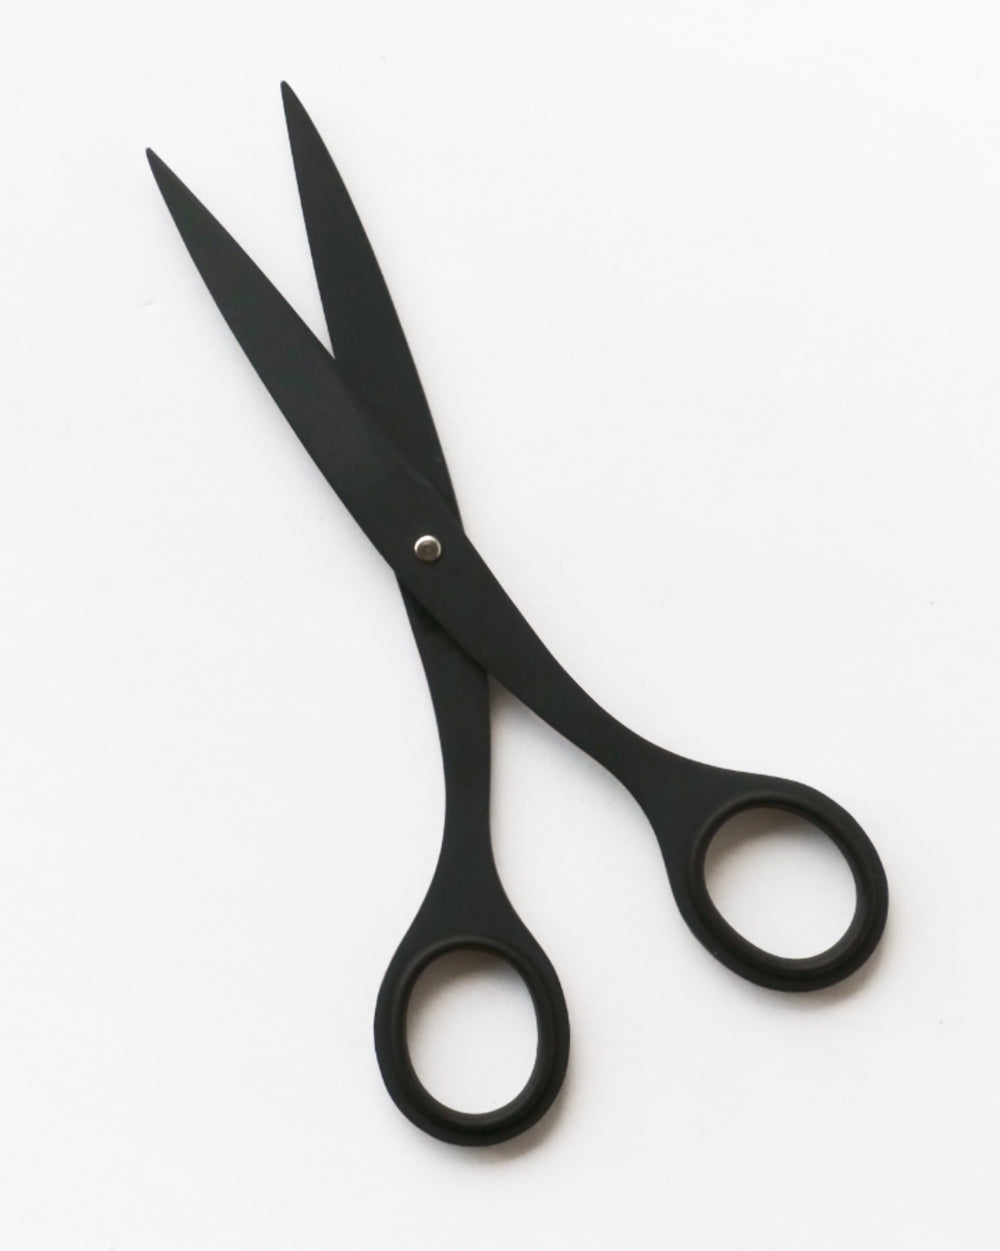 Allex Matte Black Stainless Steel Scissors